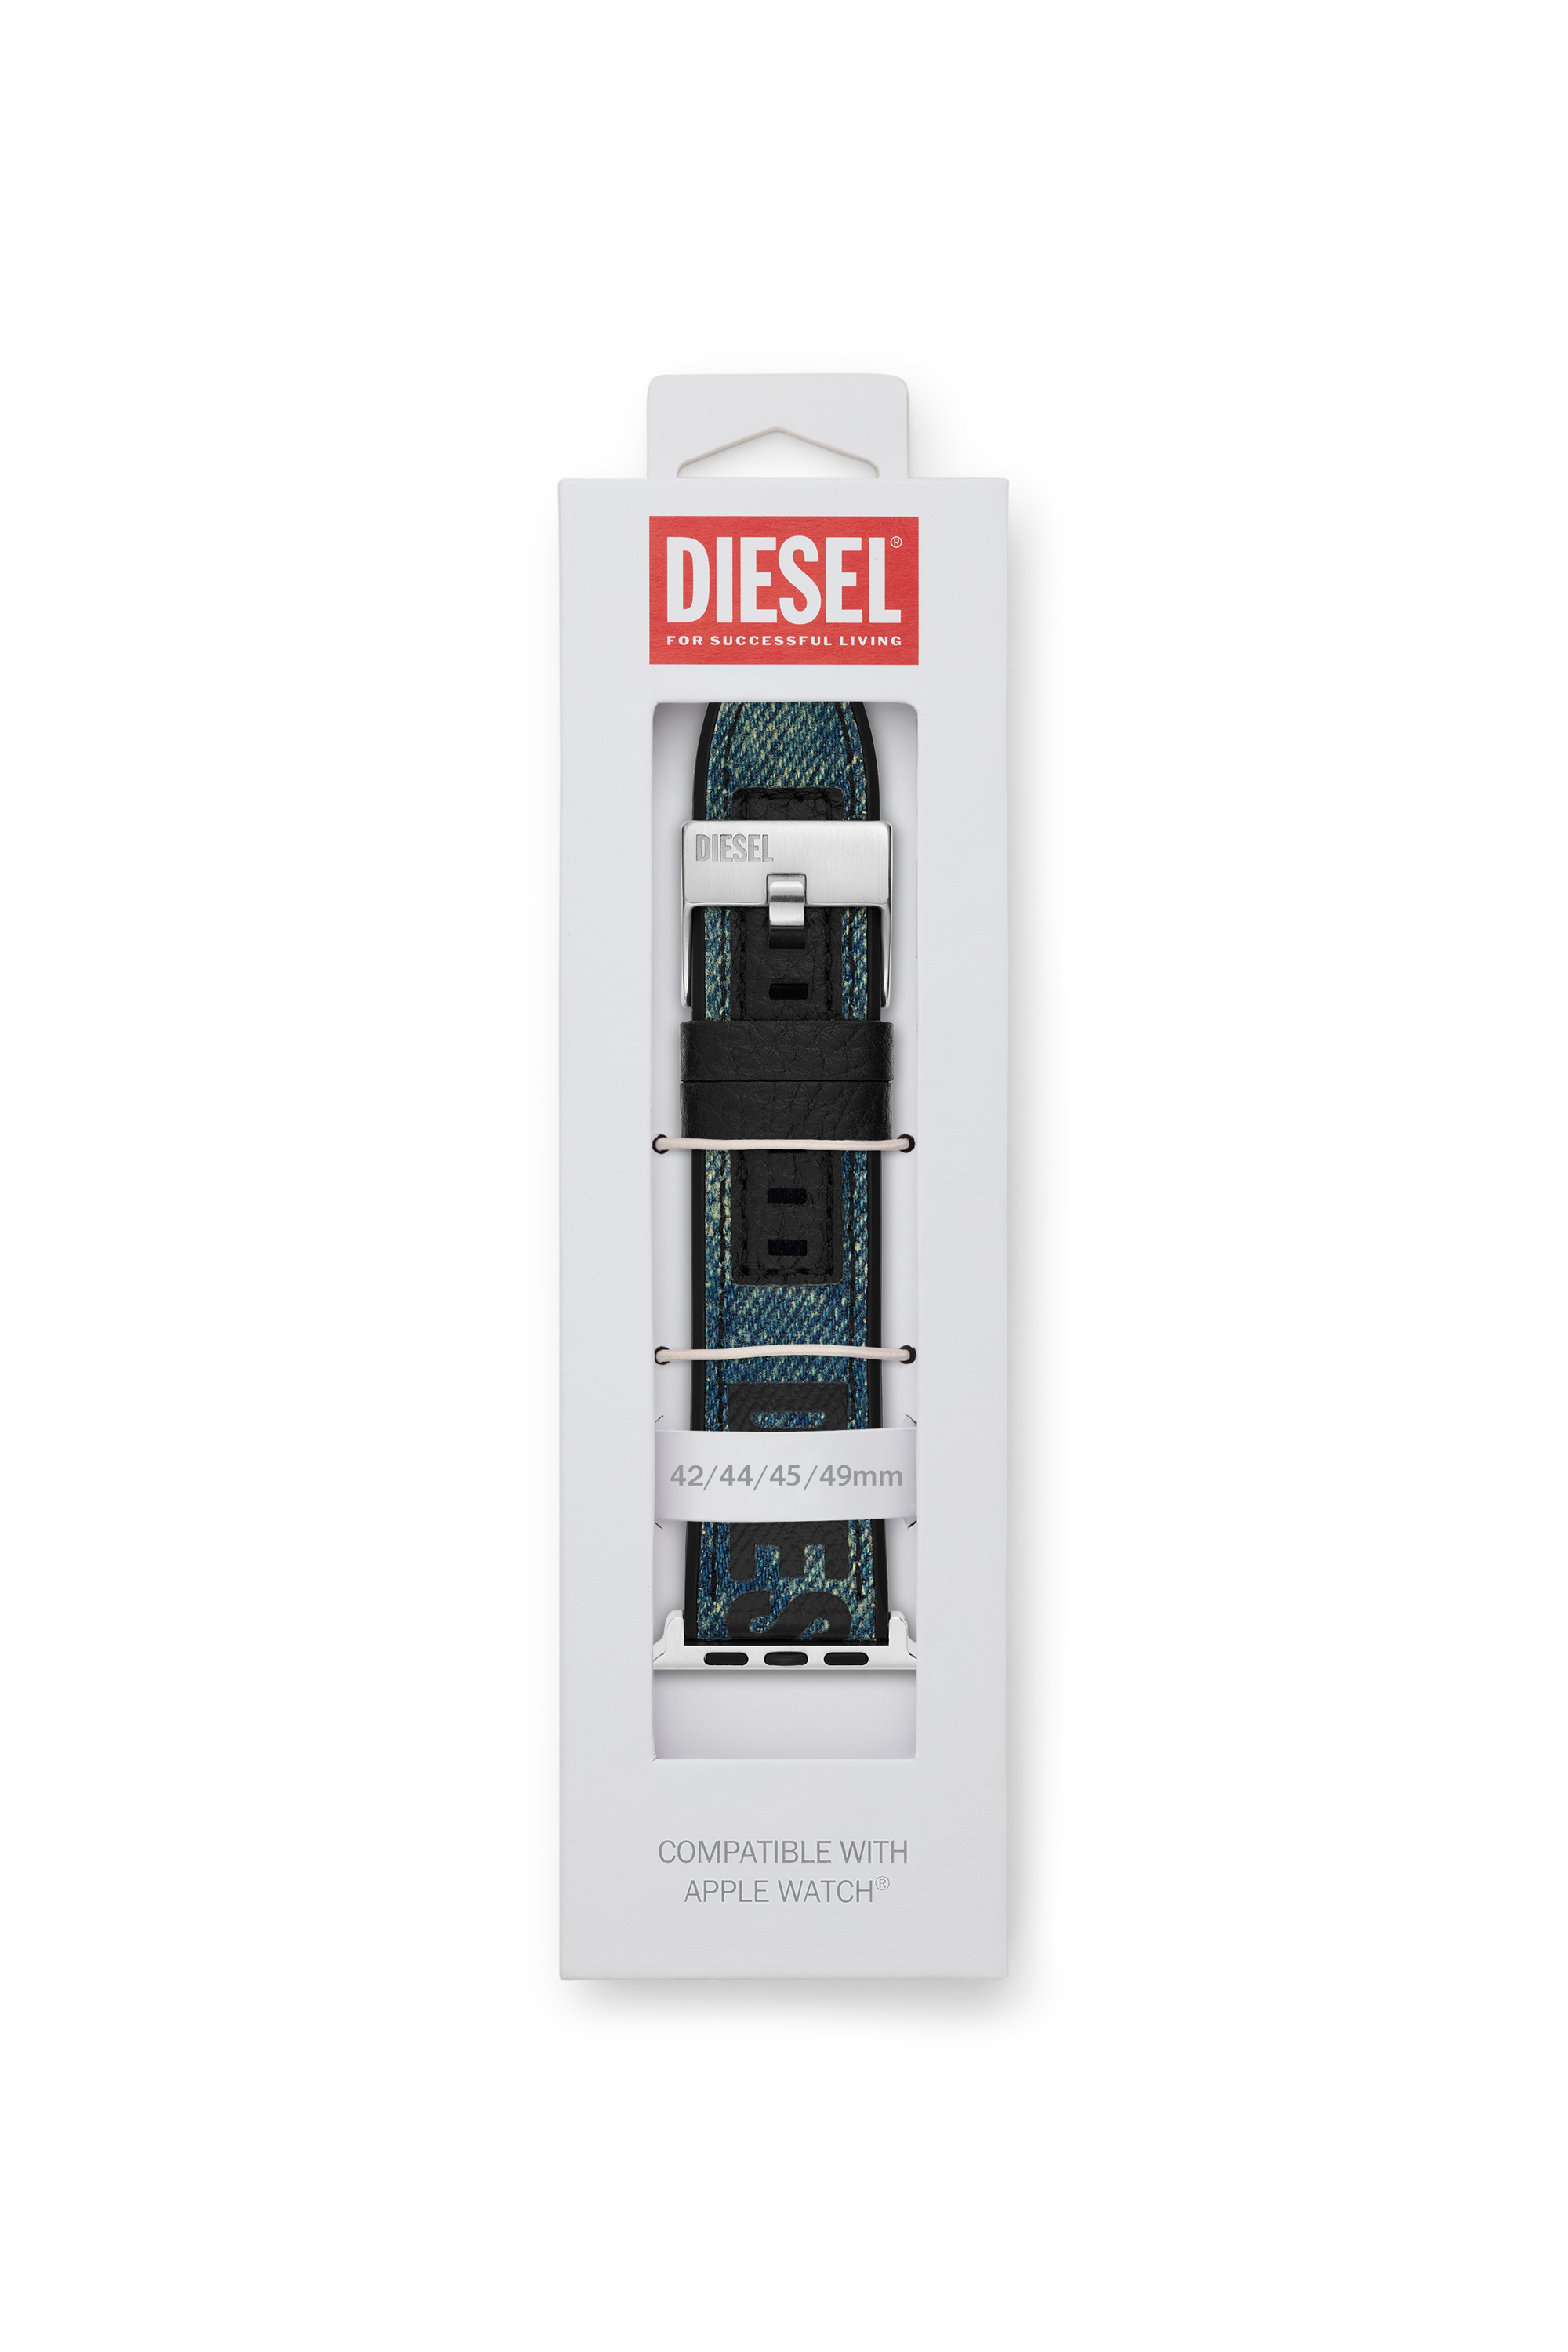 Diesel - DSS0016, Blue - Image 2